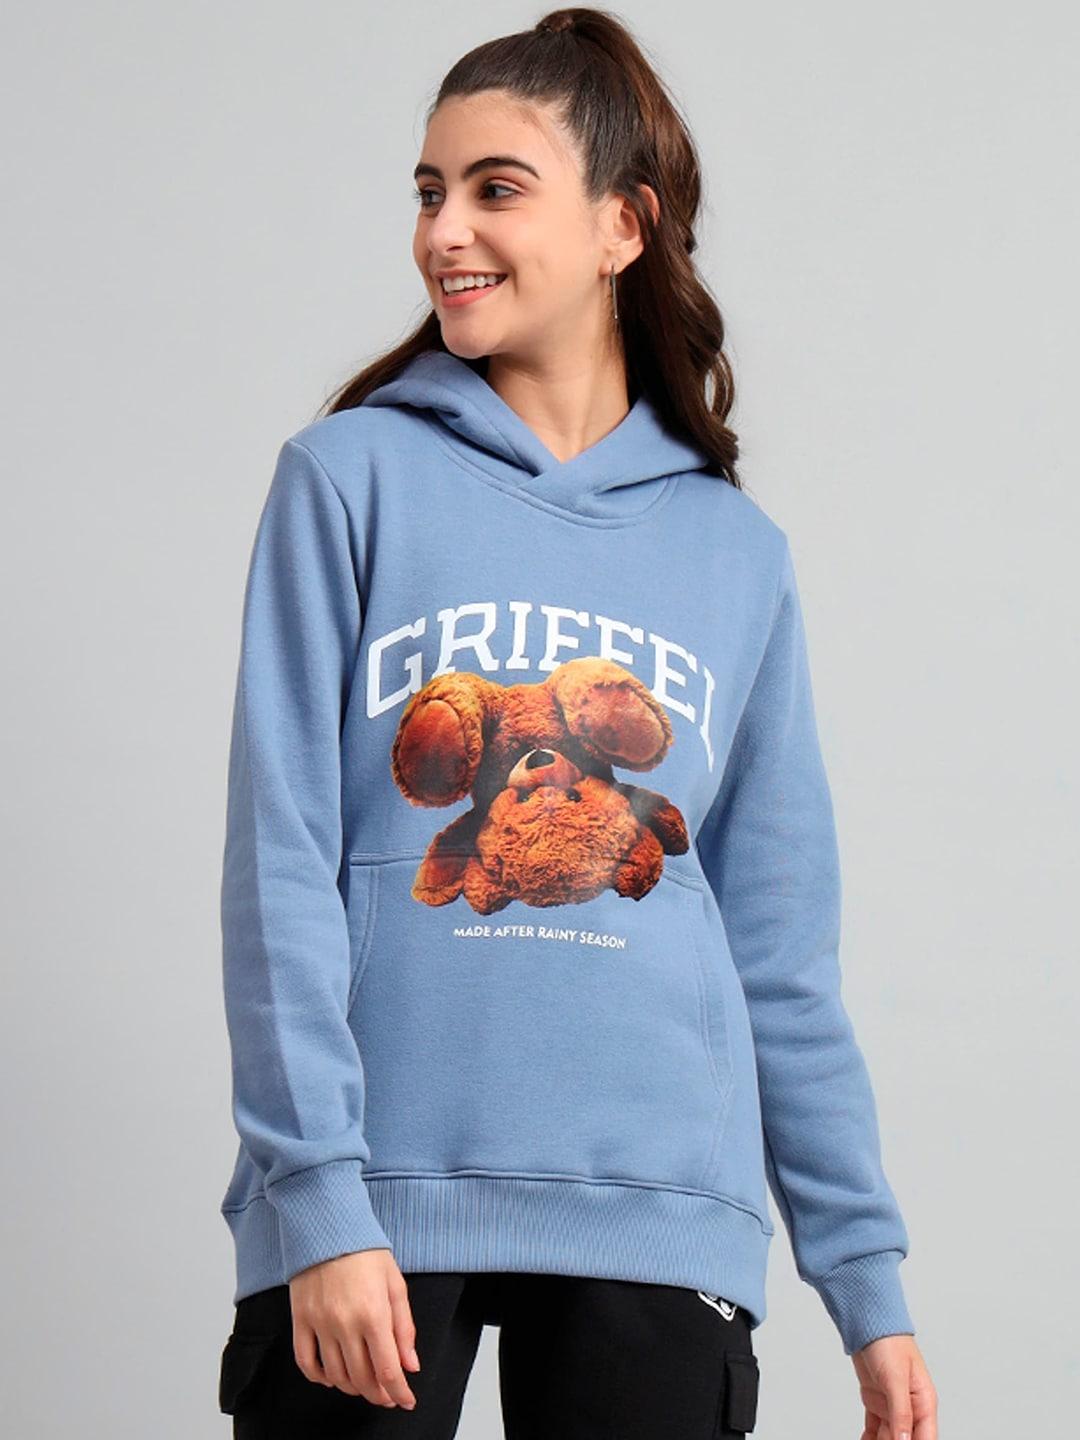 GRIFFEL Graphic Printed Hooded Fleece Sweatshirt